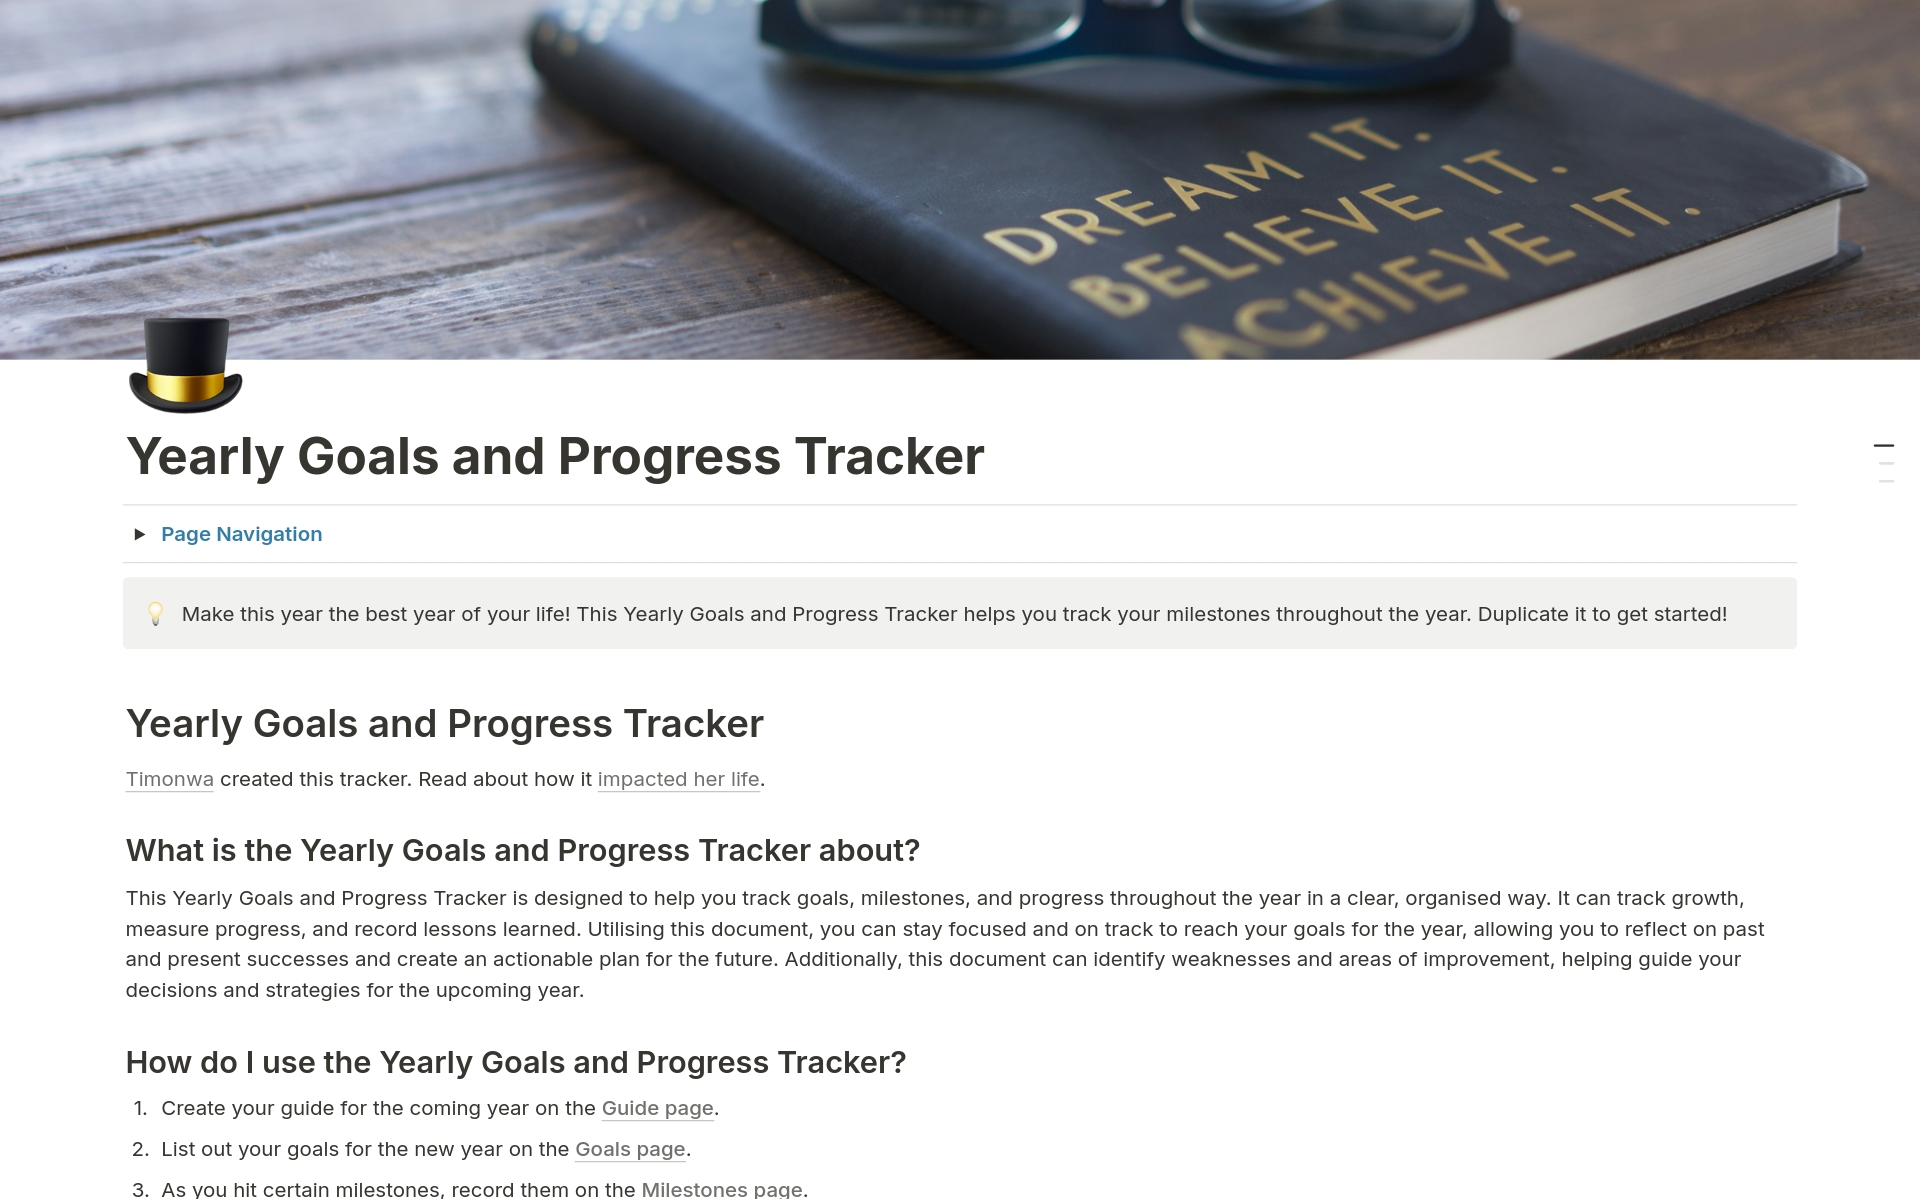 Vista previa de una plantilla para Yearly Goals and Progress Tracker